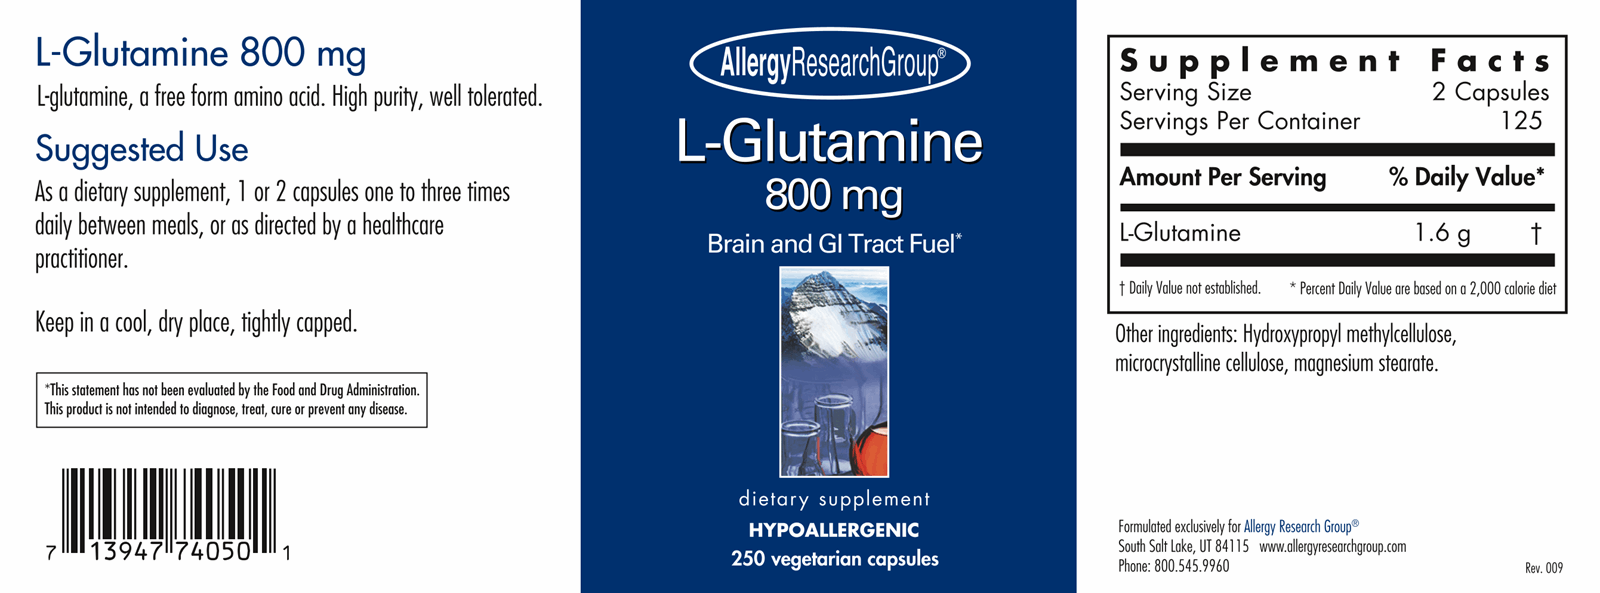 L-Glutamine 